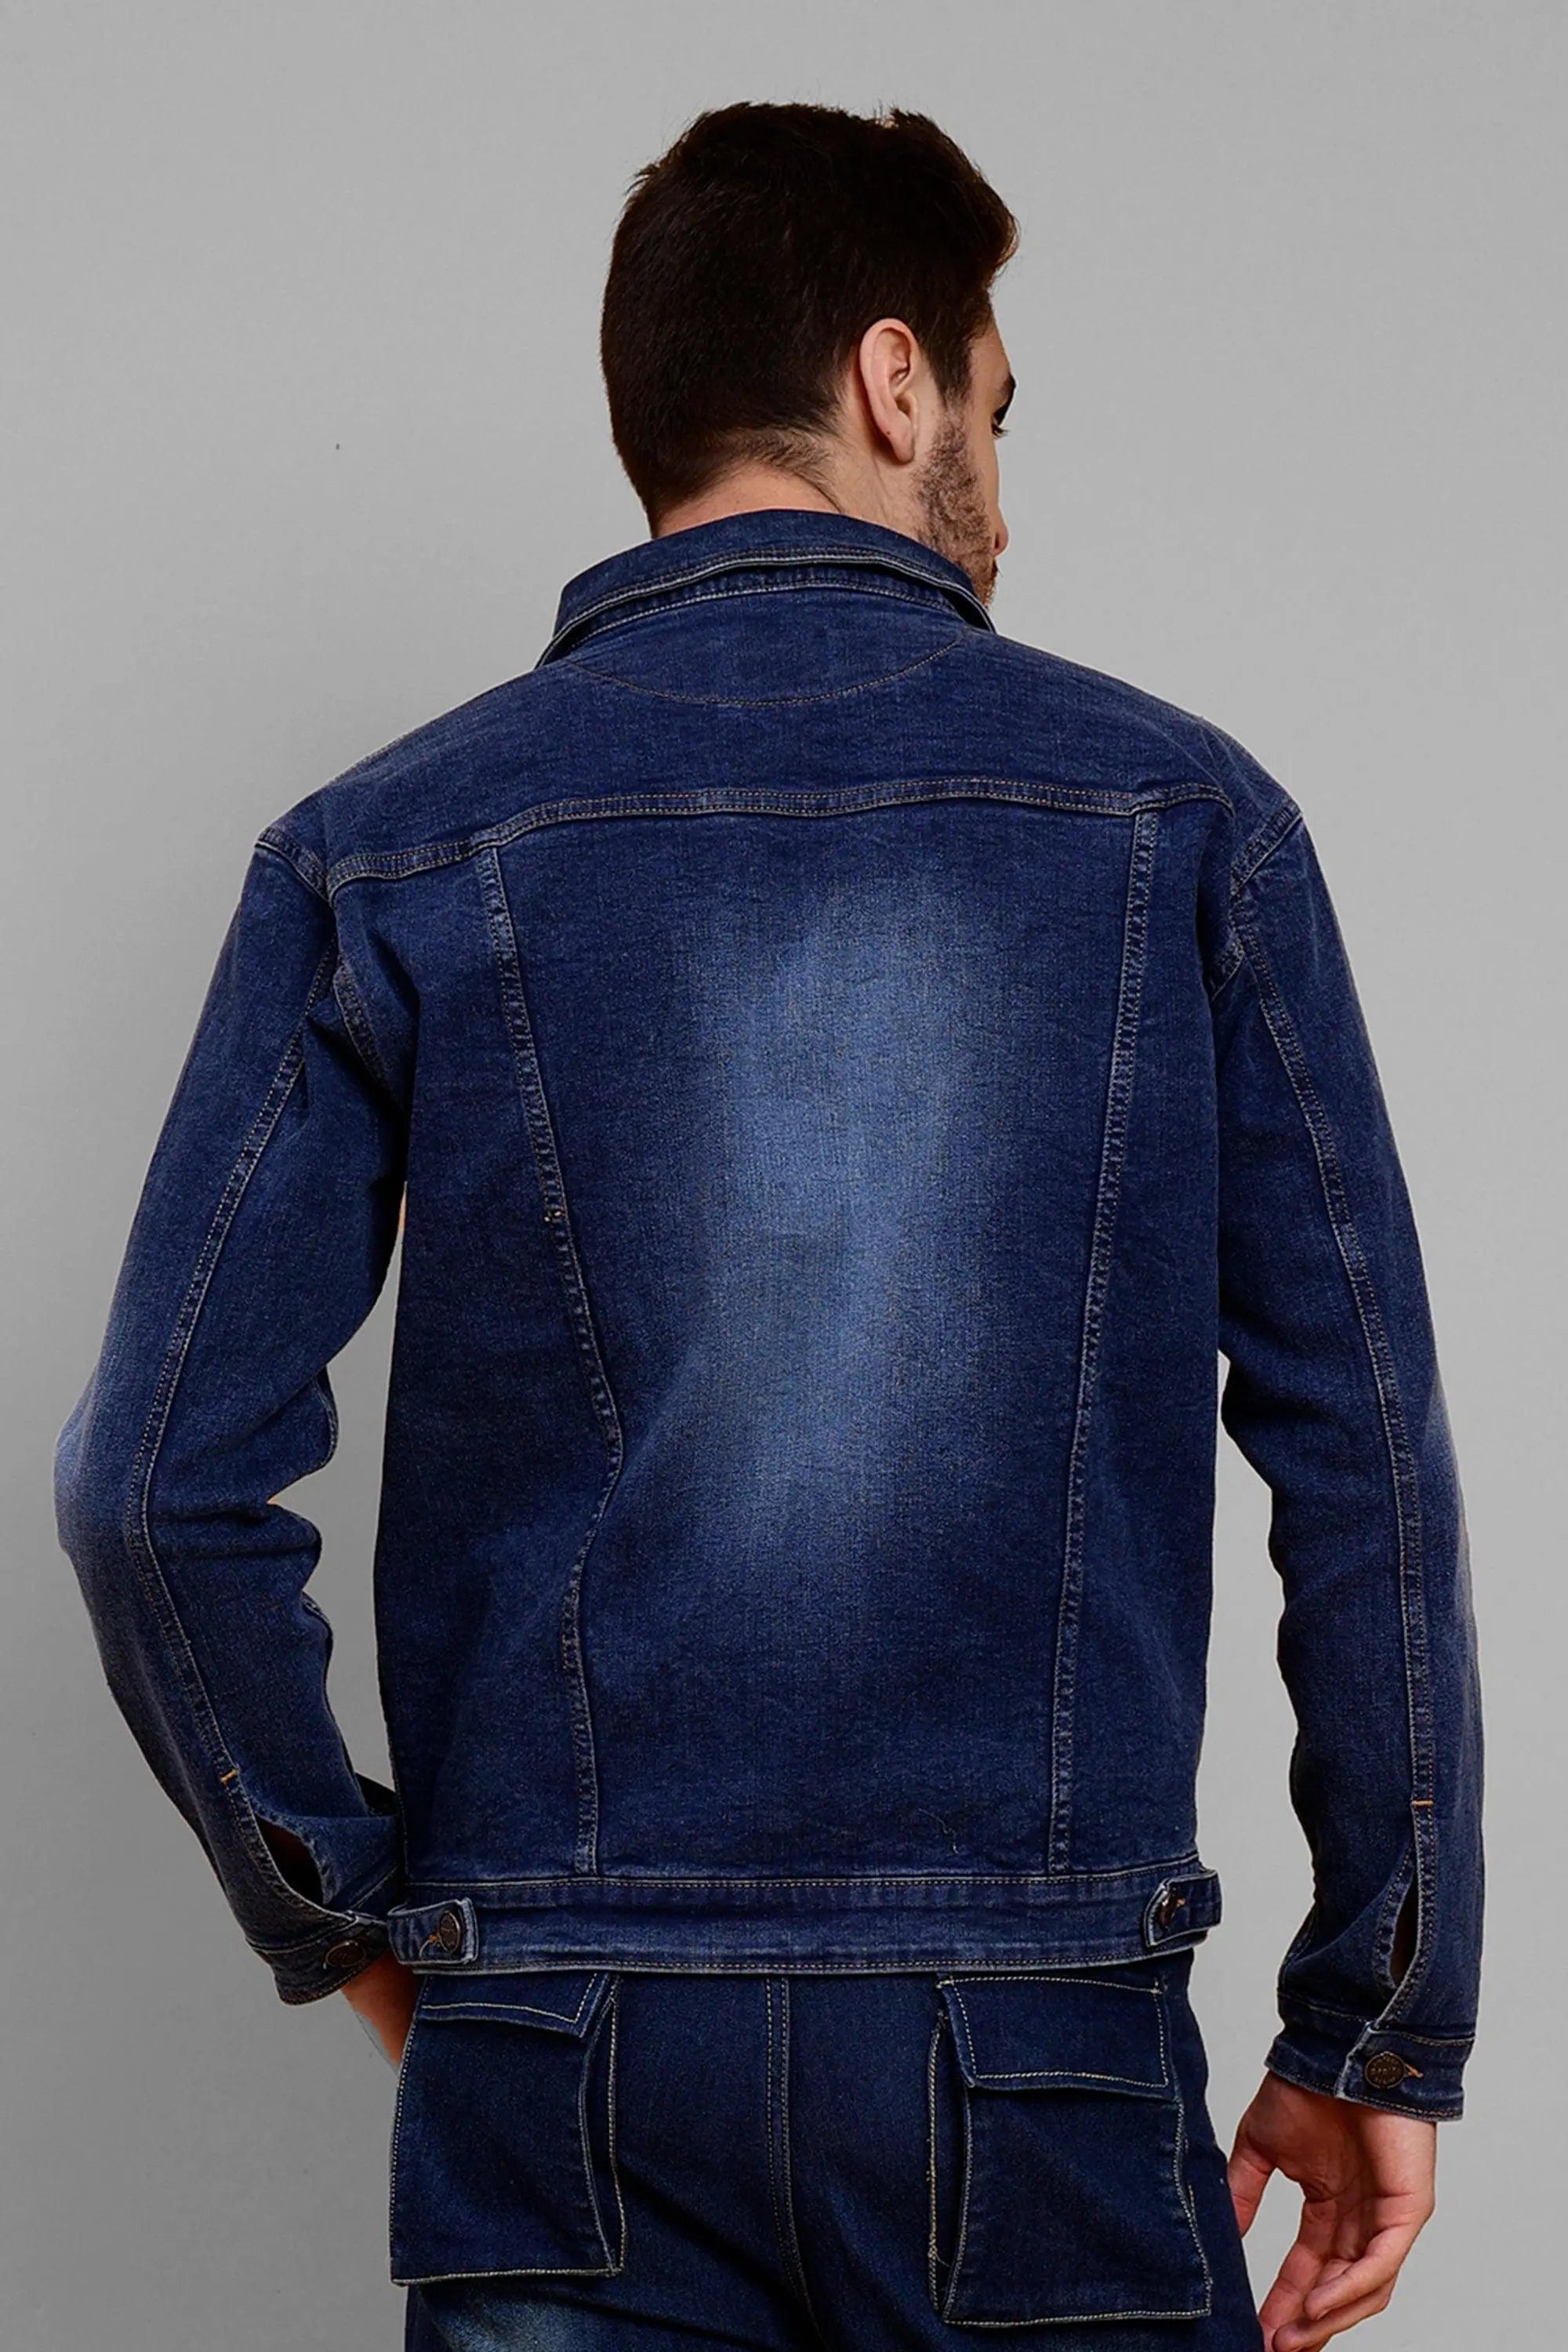 Jeans Jacket Men Stand Collar | Men's Vintage Denim Jacket | Vintage  Tactical Jacket - Jackets - Aliexpress